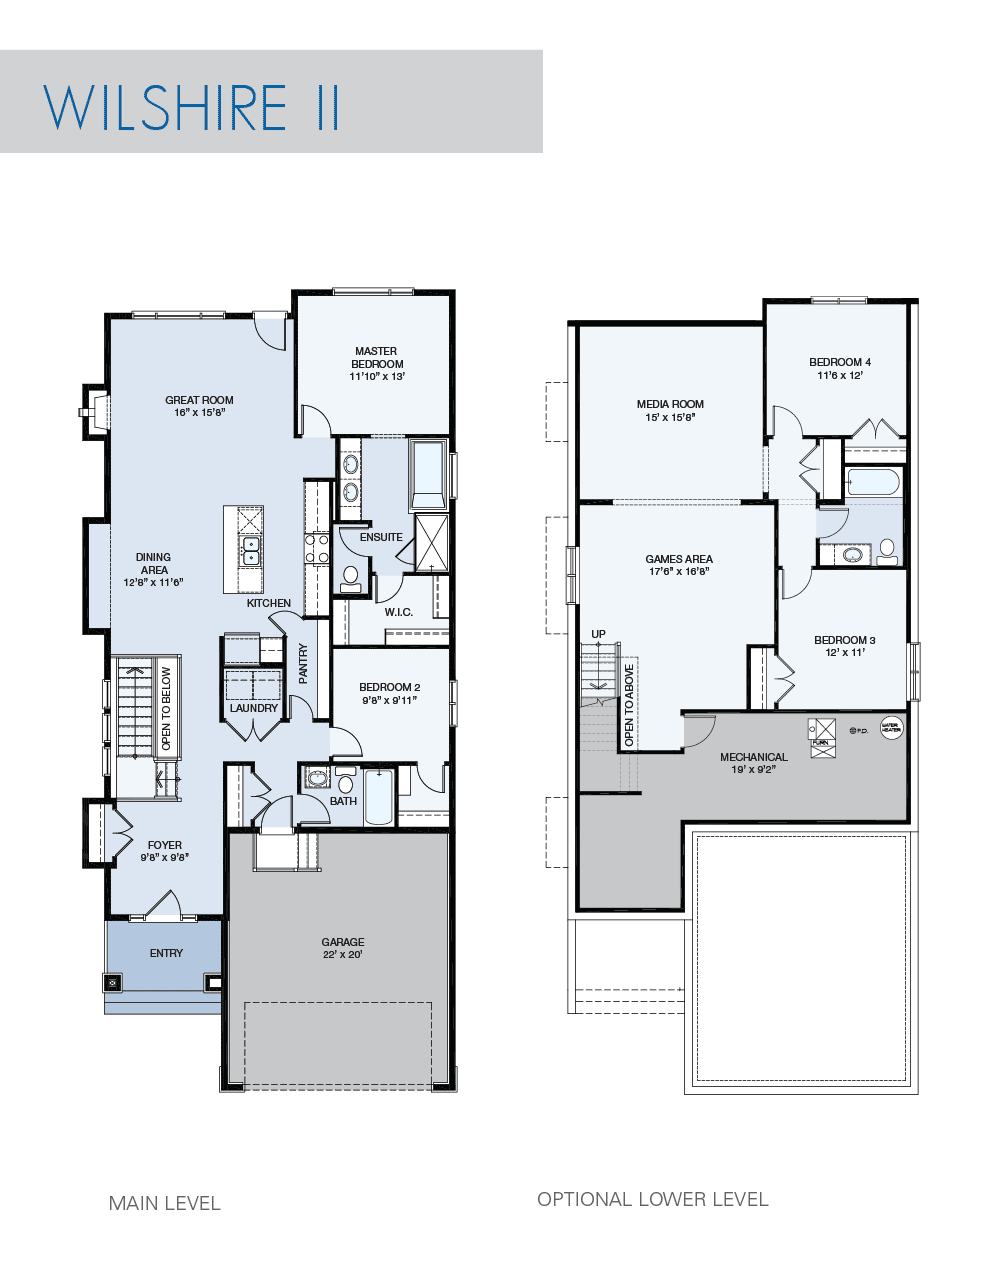 Wilshire II floorplans